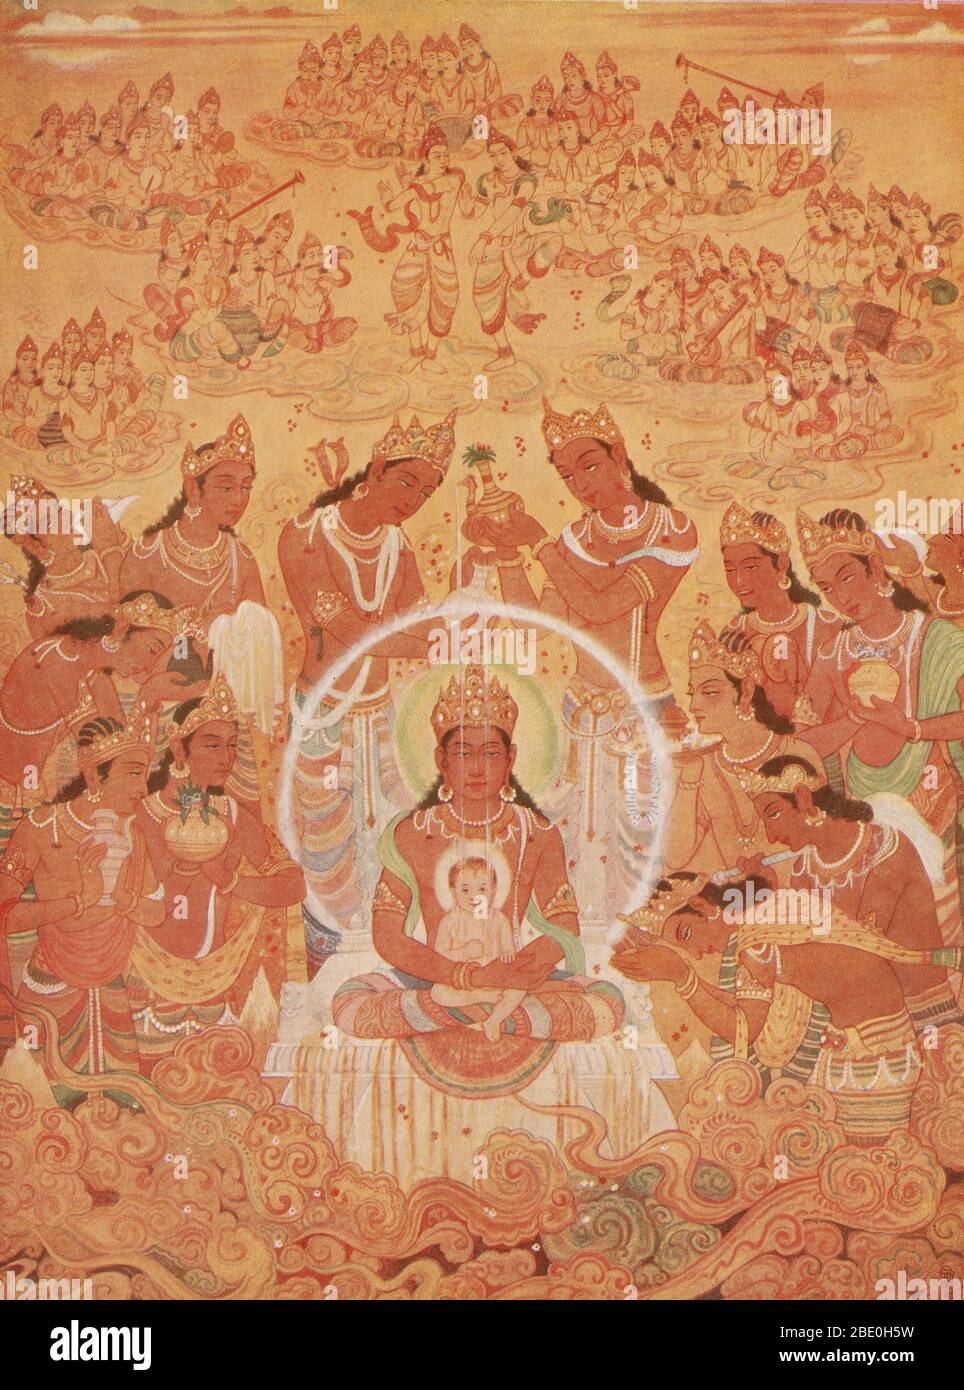 Mahavira è il fondatore del Jainism. Visse tra il 599 e il 527 a.C.. Mahavira predicò che ogni anima vivente porta atomi karmici che si accumulano attraverso varie azioni. Per eliminare il karma, bisogna vivere secondo gli insegnamenti di Giain, che enfatizzano la non violenza e il non attaccamento. Foto Stock